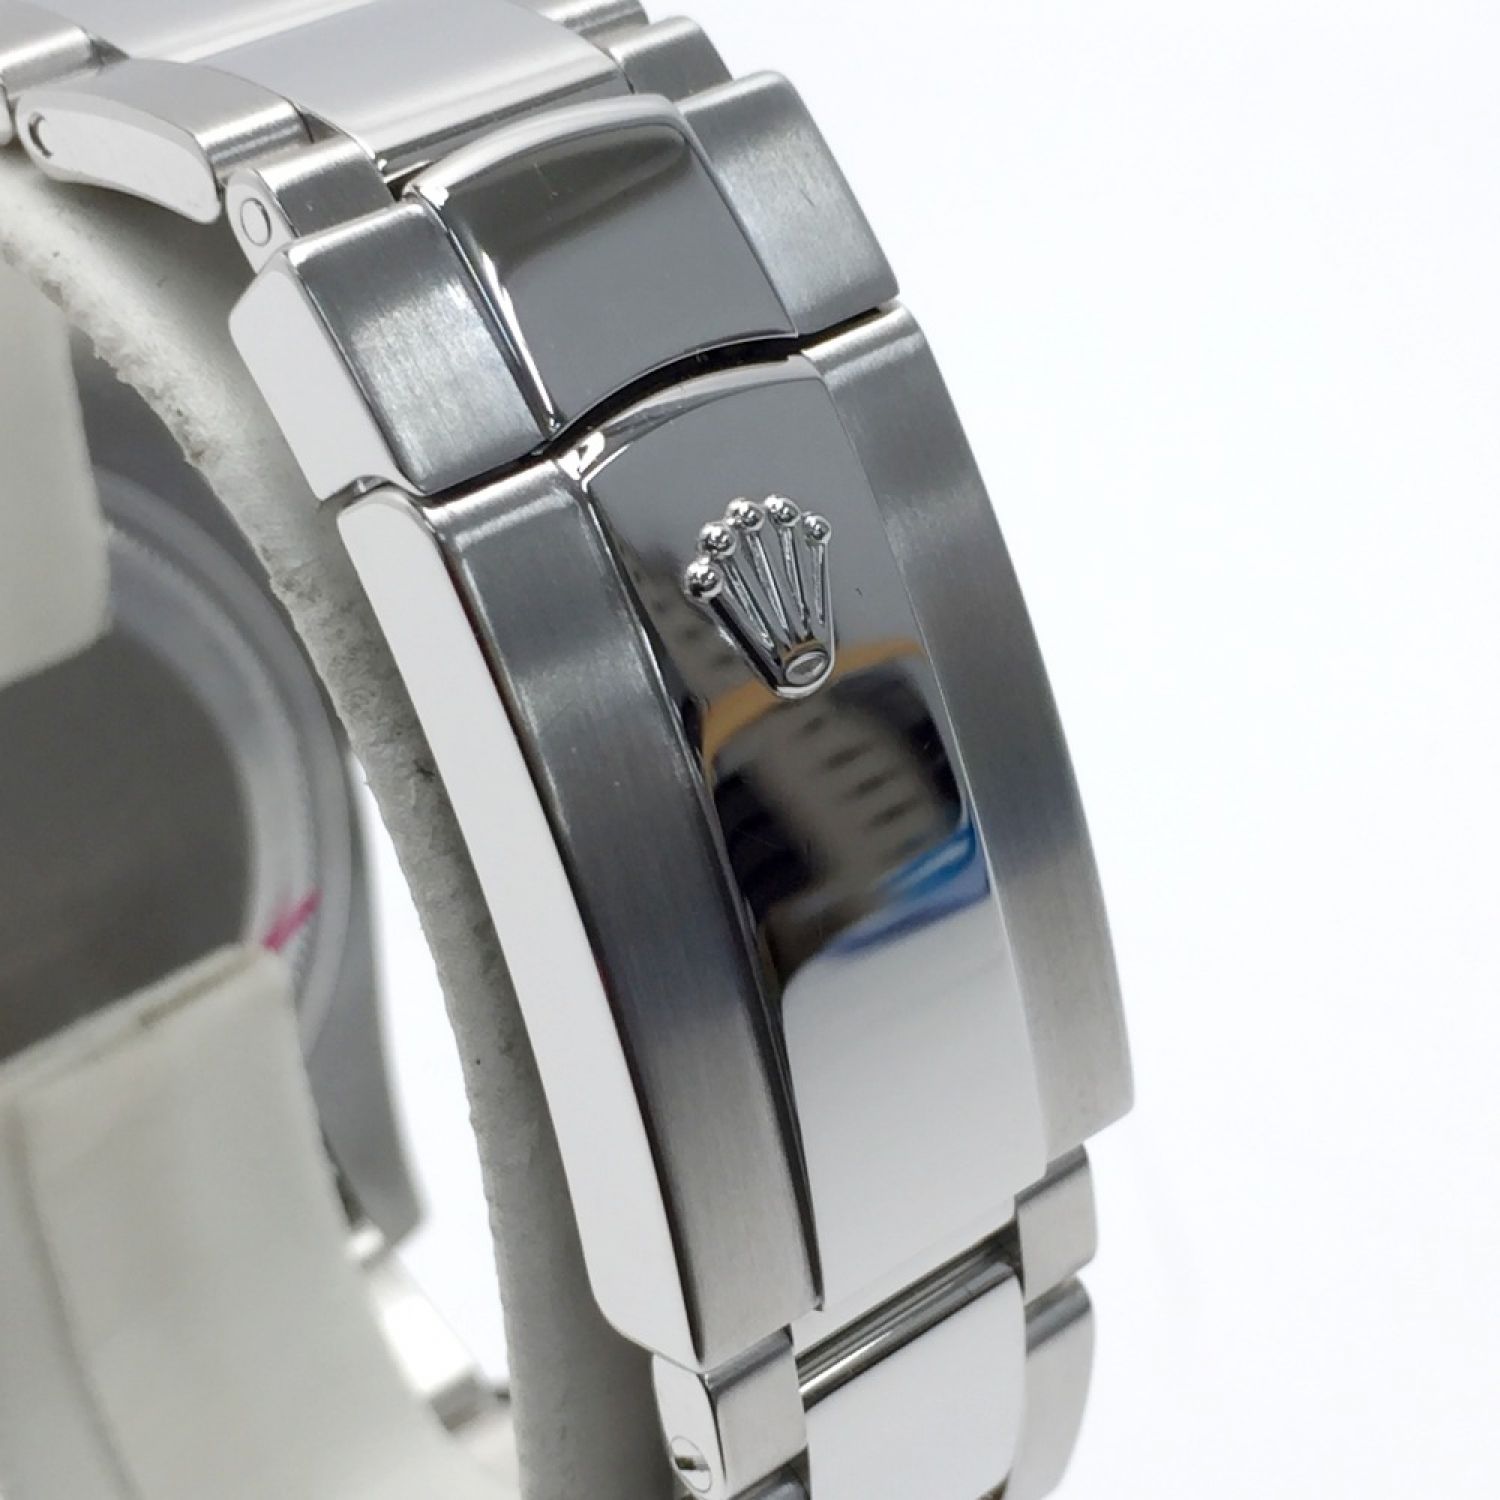 ロレックス ROLEX 116234 Z番(2007年頃製造) シルバー メンズ 腕時計